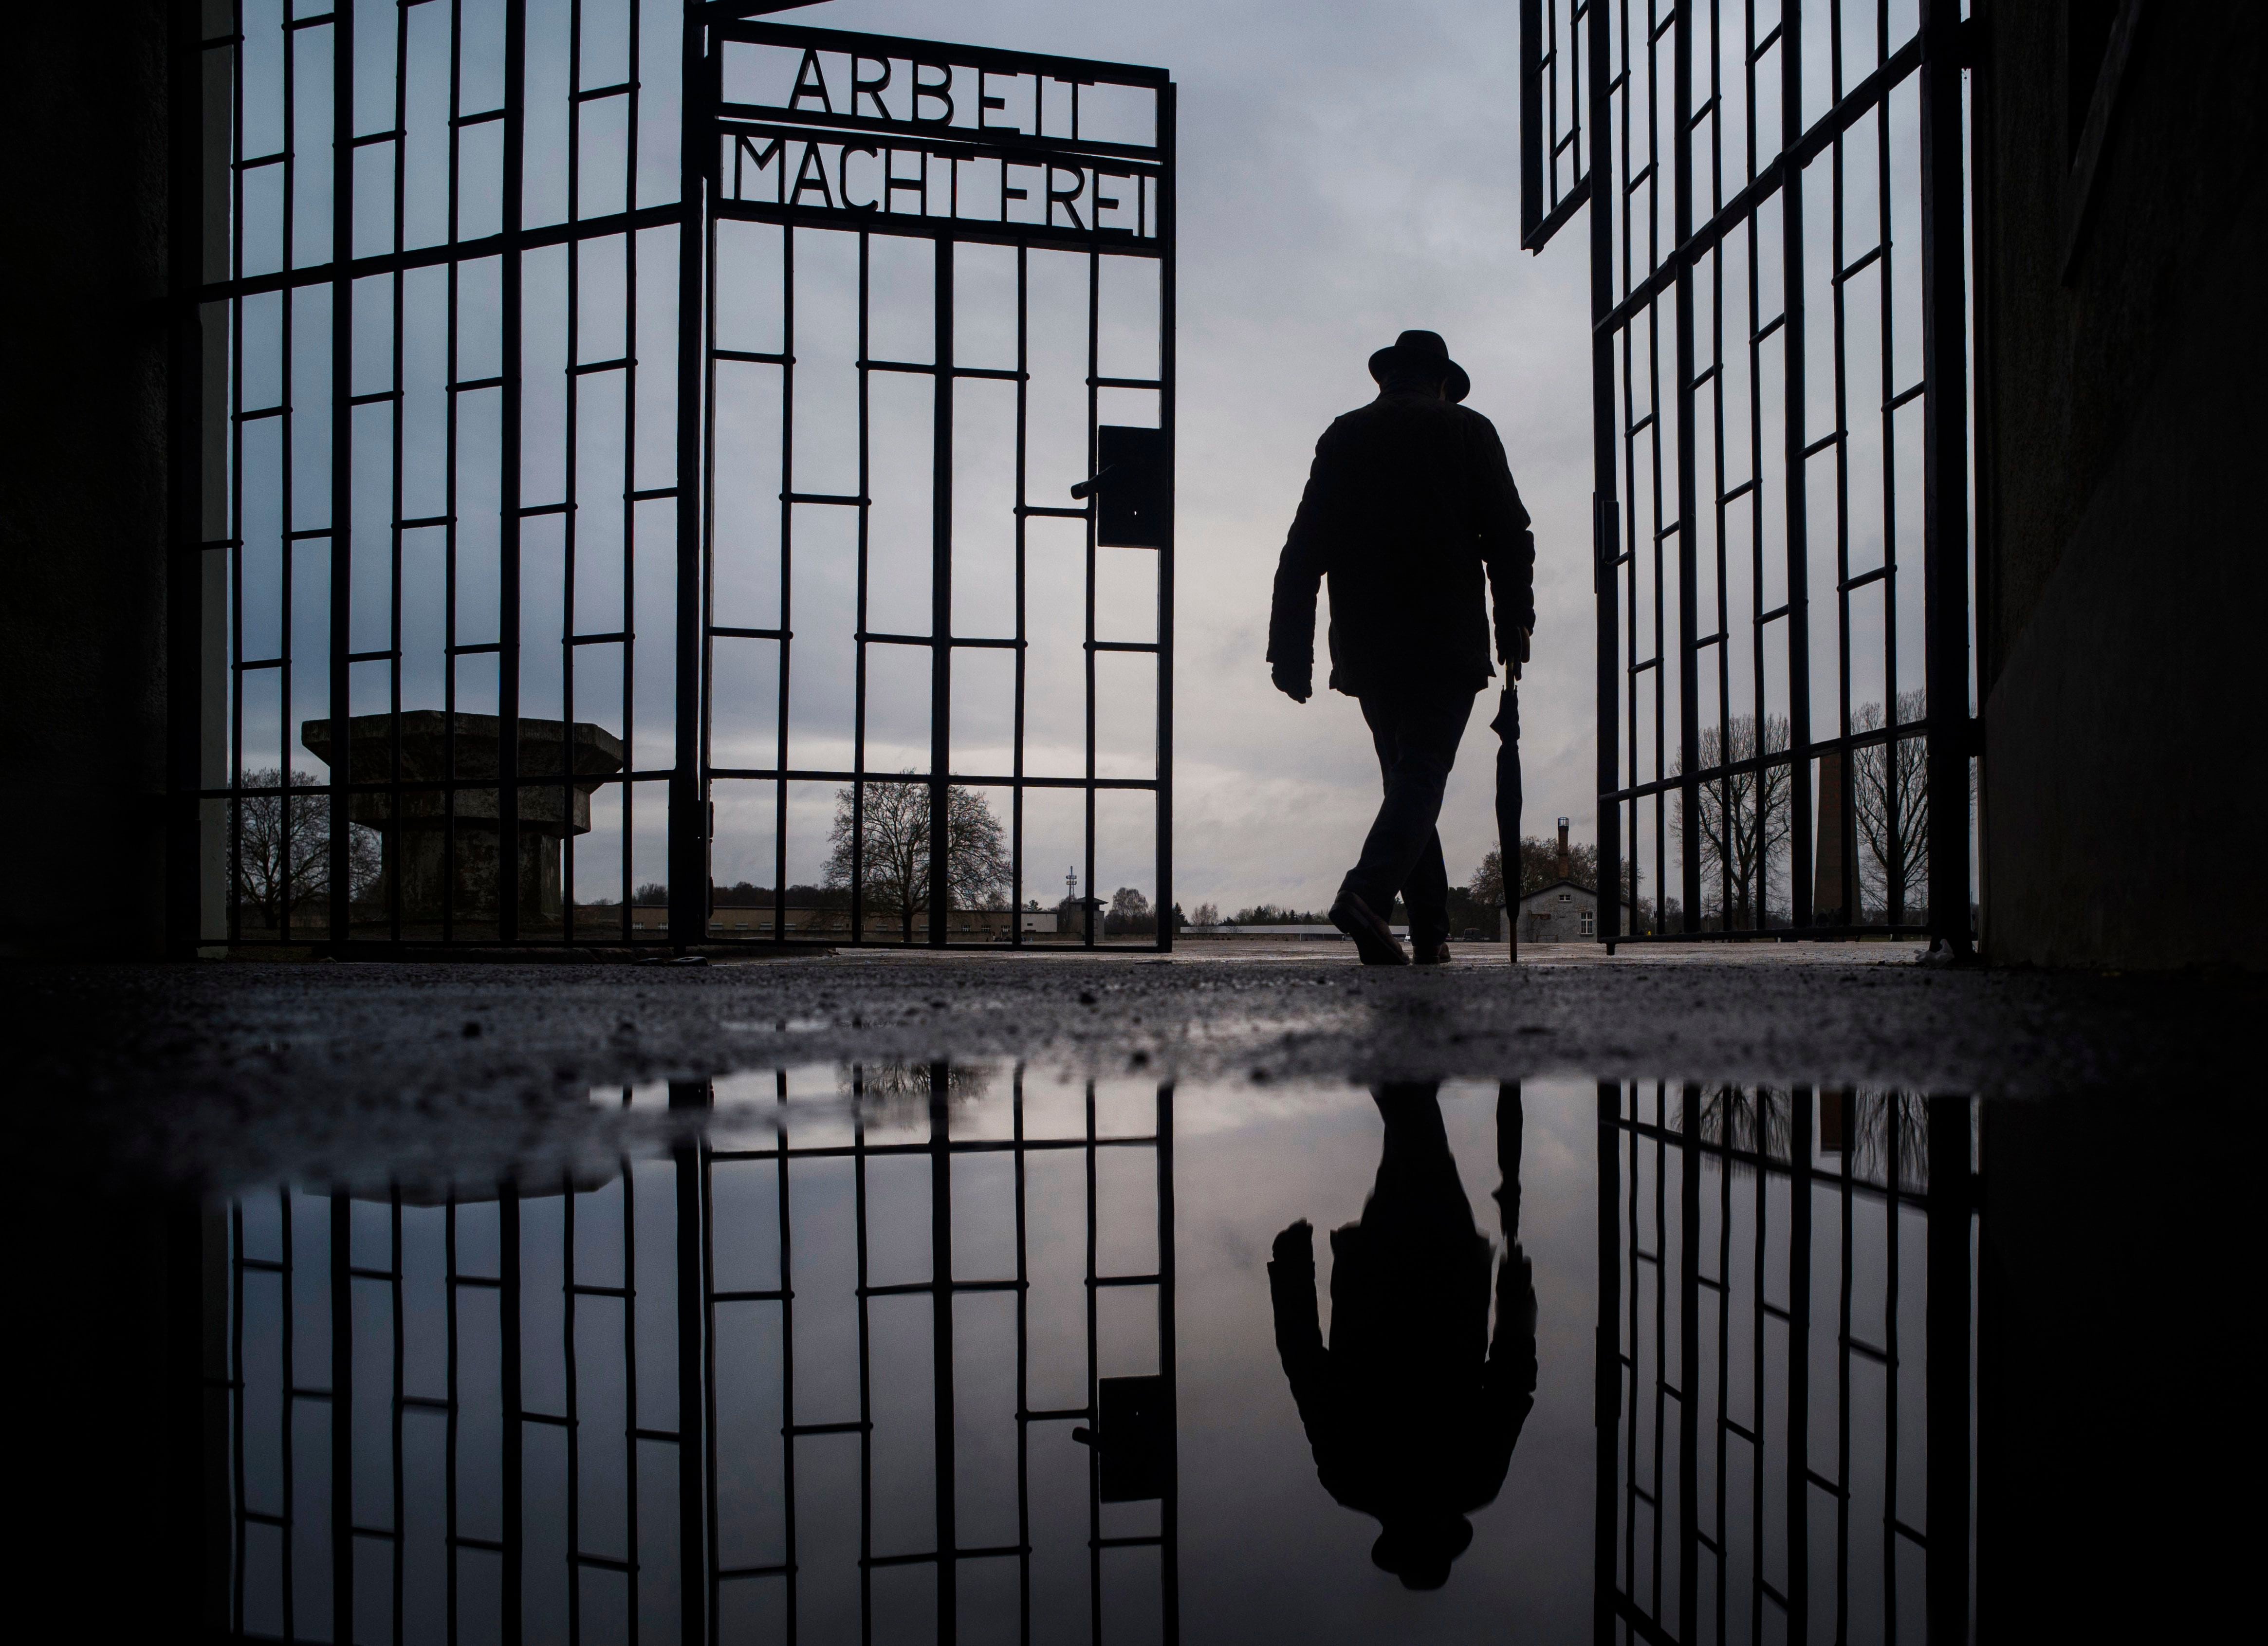 Un hombre cruza la puerta del campo de exterminio nazi de Sachsenhausen, en la que dice en alemán "El trabajo los hará libres", durante el Día Internacional de Recuerdo del Holocausto, en la localidad de Oranienburg, a unos 30 kilómetros al norte de Berlín, Alemania (AP Foto/Markus Schreiber, Archivo)